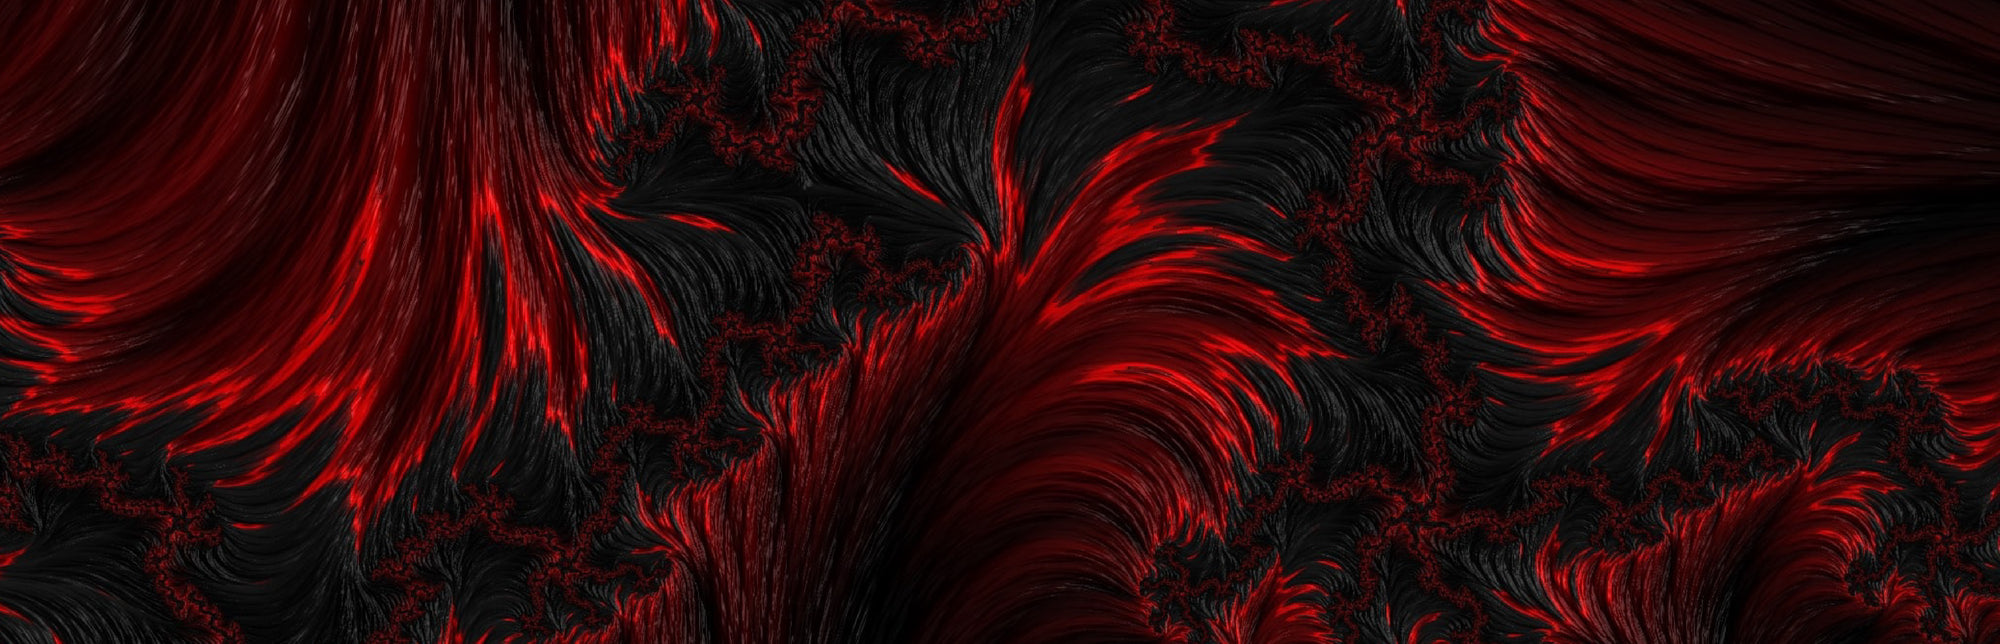 Schimmernde Oberfläche in Schwarz-Rot